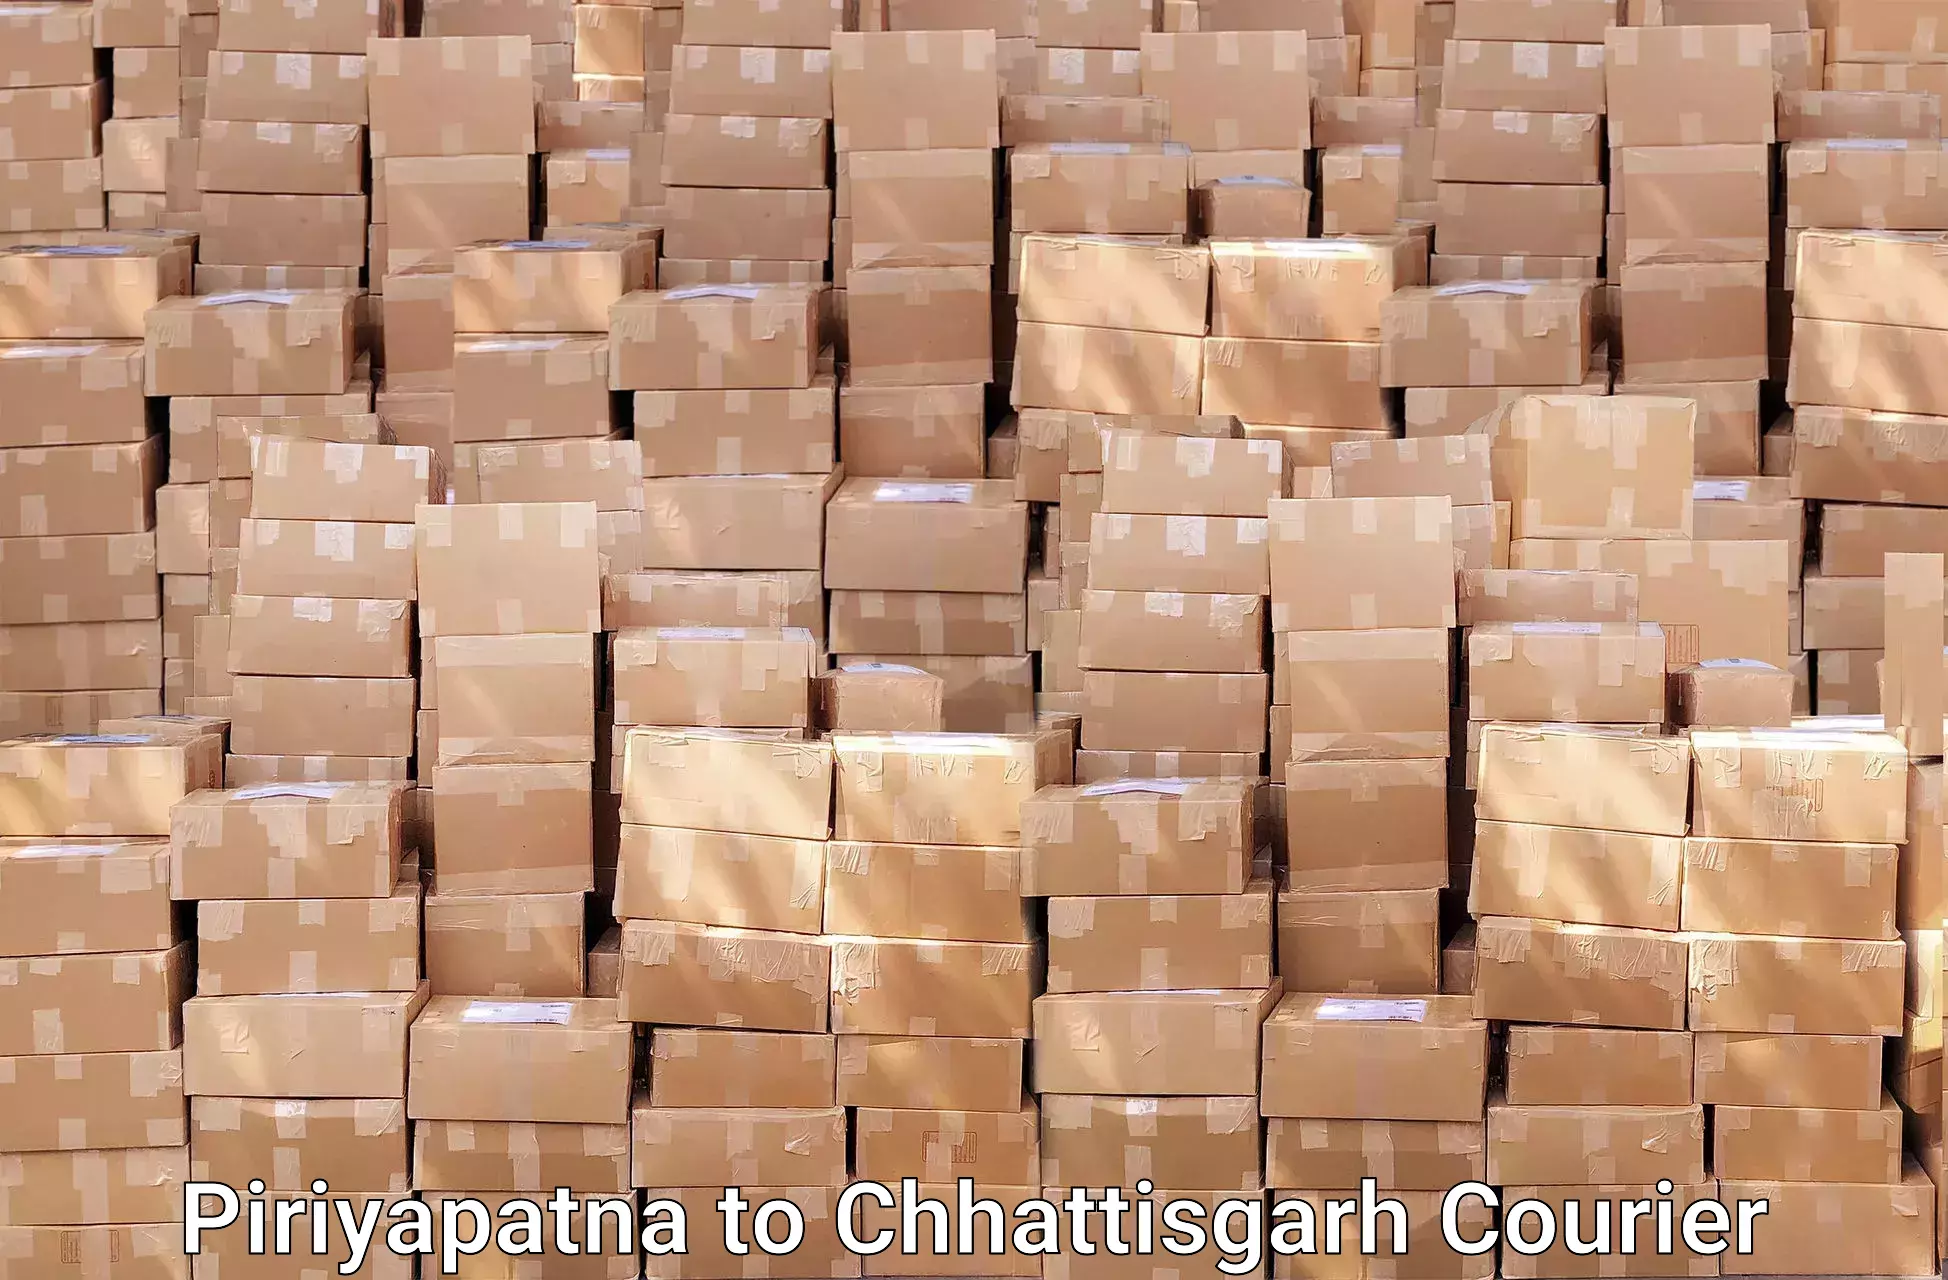 Efficient moving company Piriyapatna to bagbahra